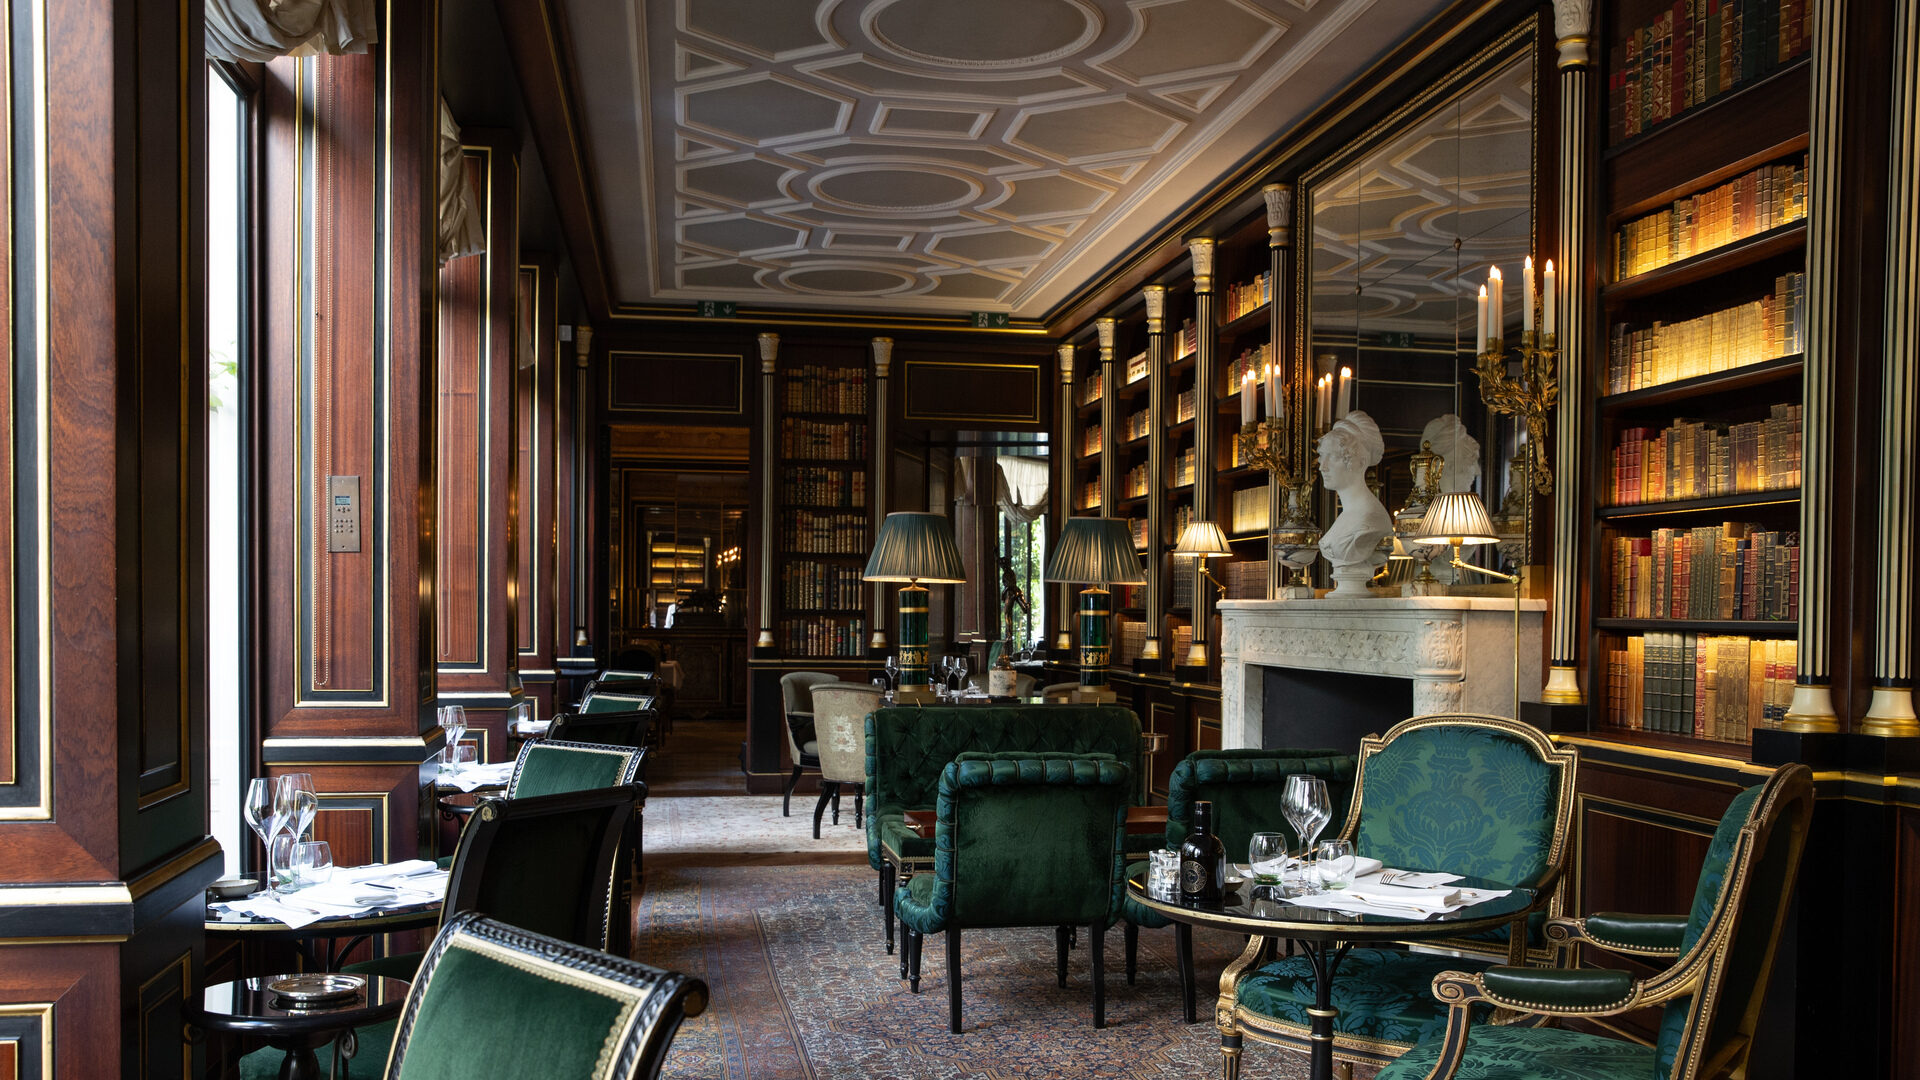 La Réserve Paris epitomizes the fusion of Parisian elegance with modern luxury